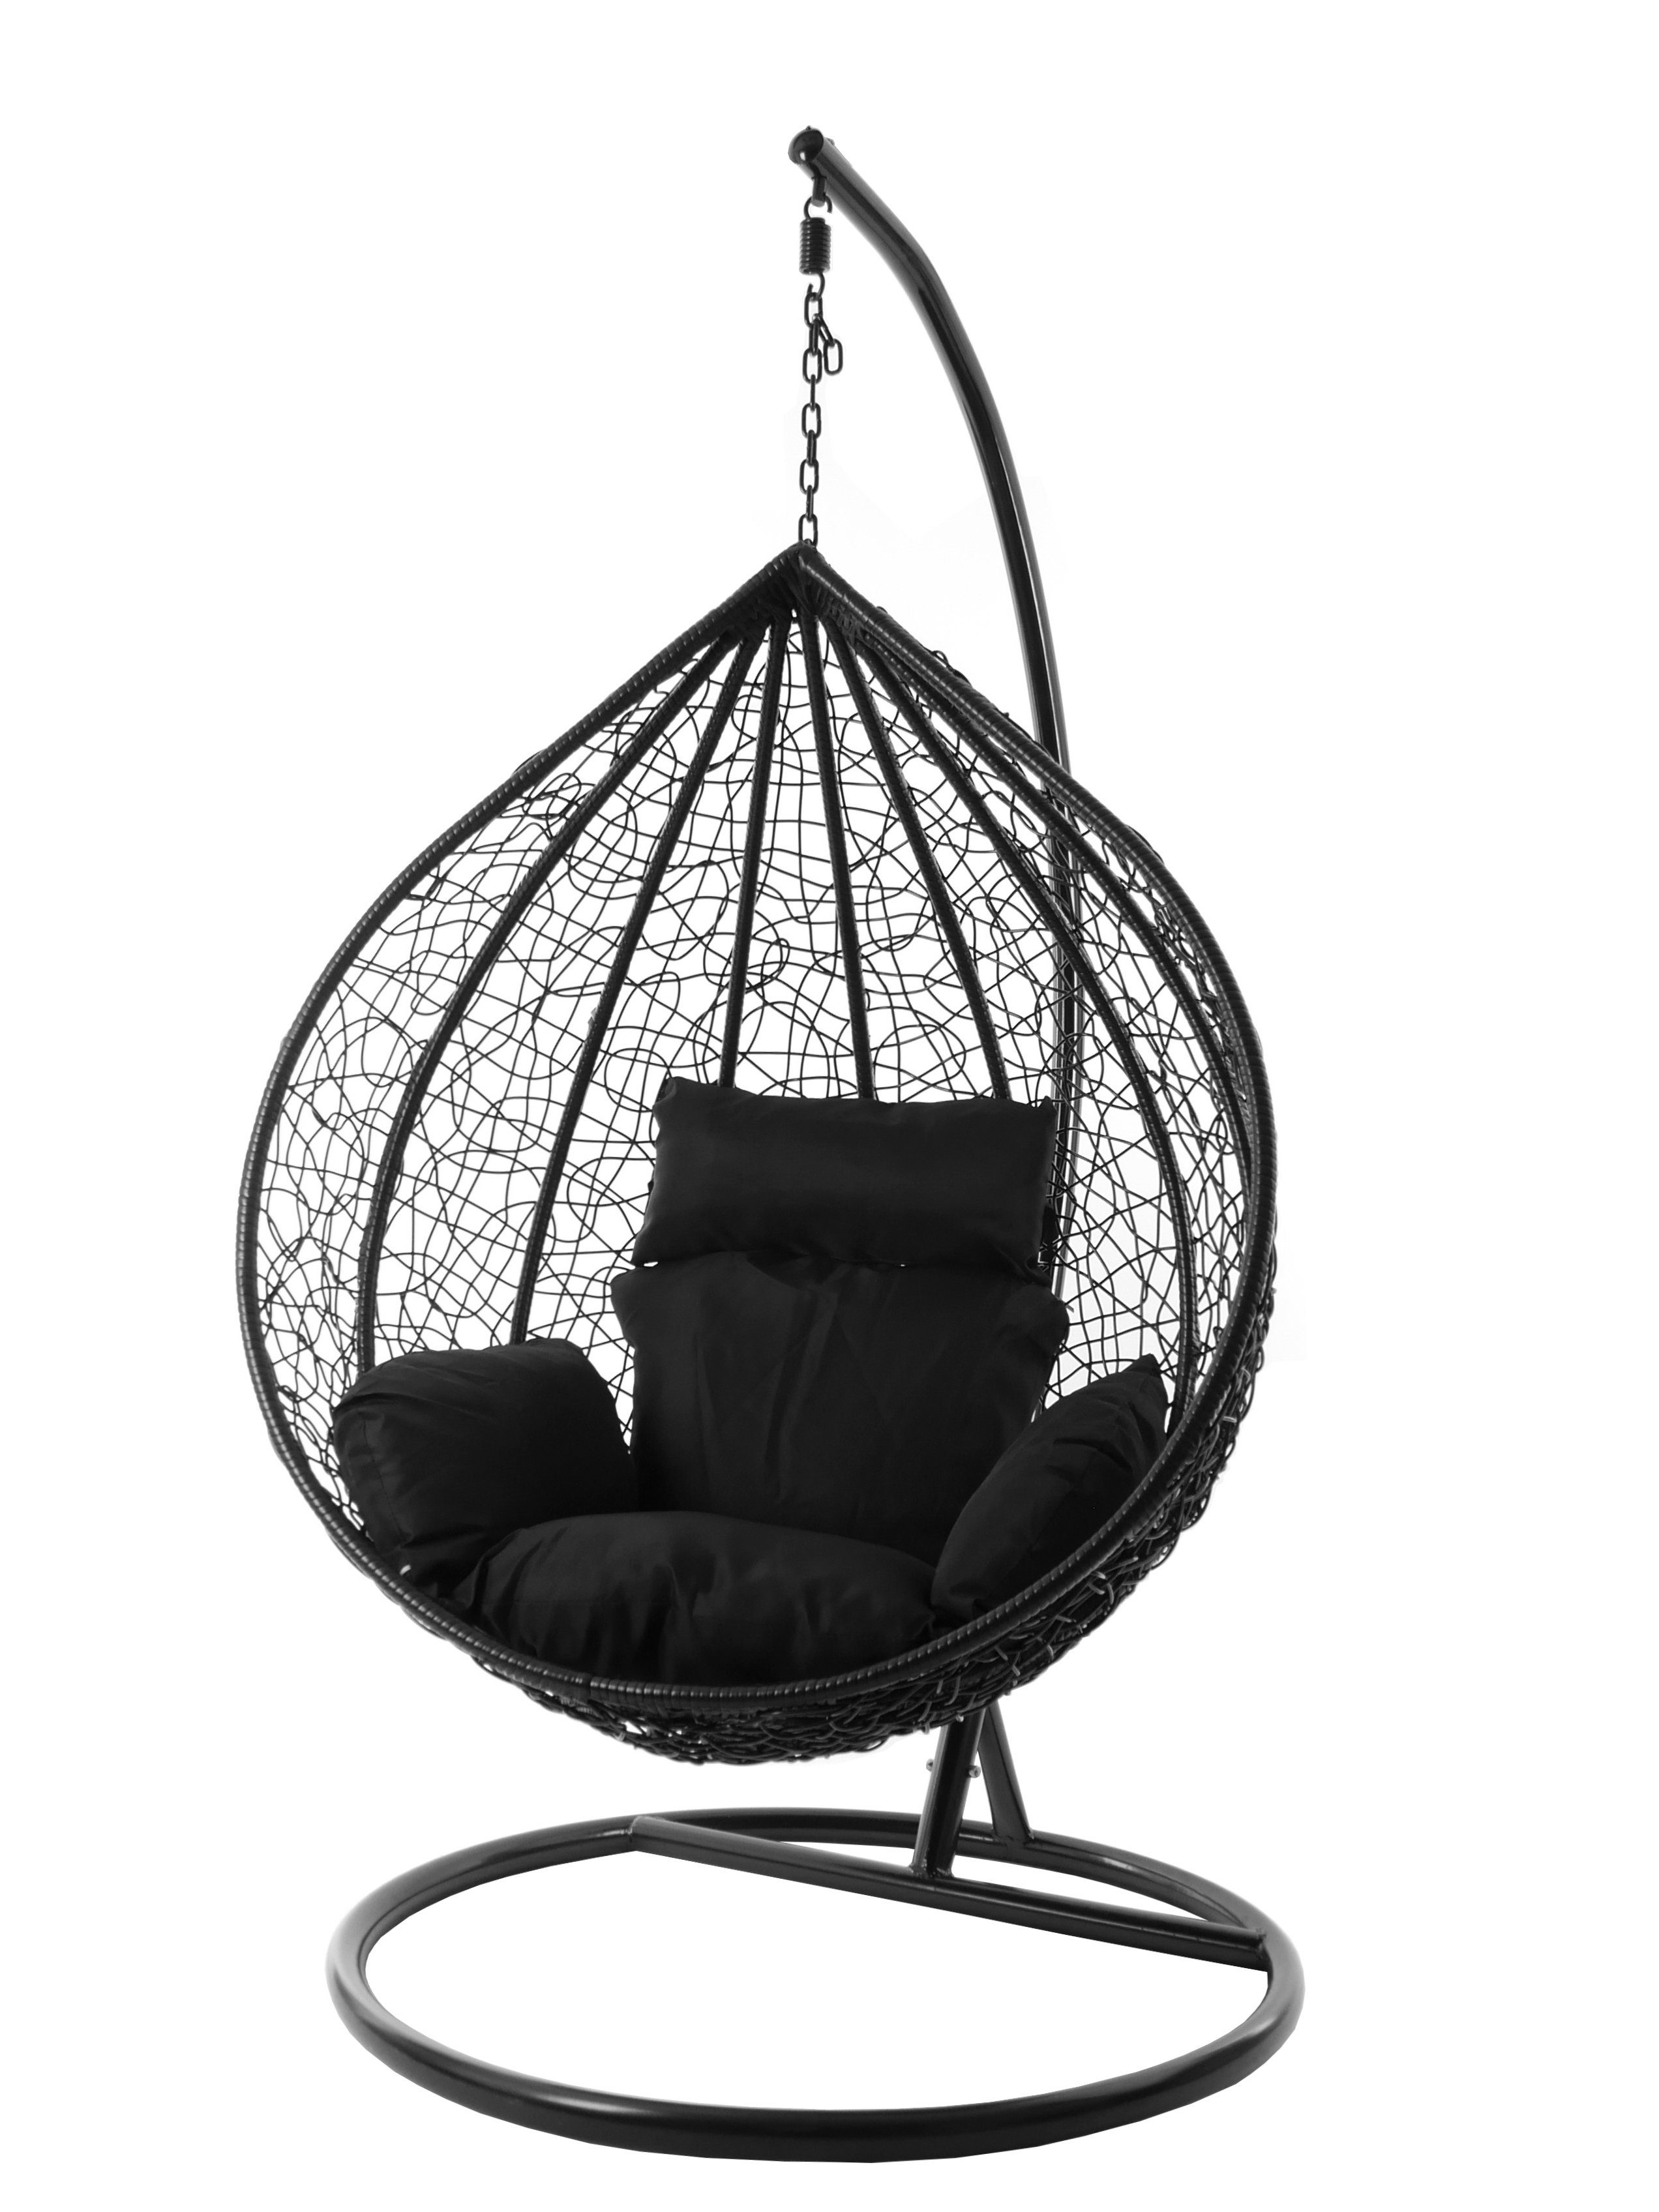 KIDEO Hängesessel Hängesessel schwarz, black) Chair, edel, und MANACOR Gestell verschiedene Nest-Kissen, Swing XXL Kissen inklusive, (9999 Farben schwarz